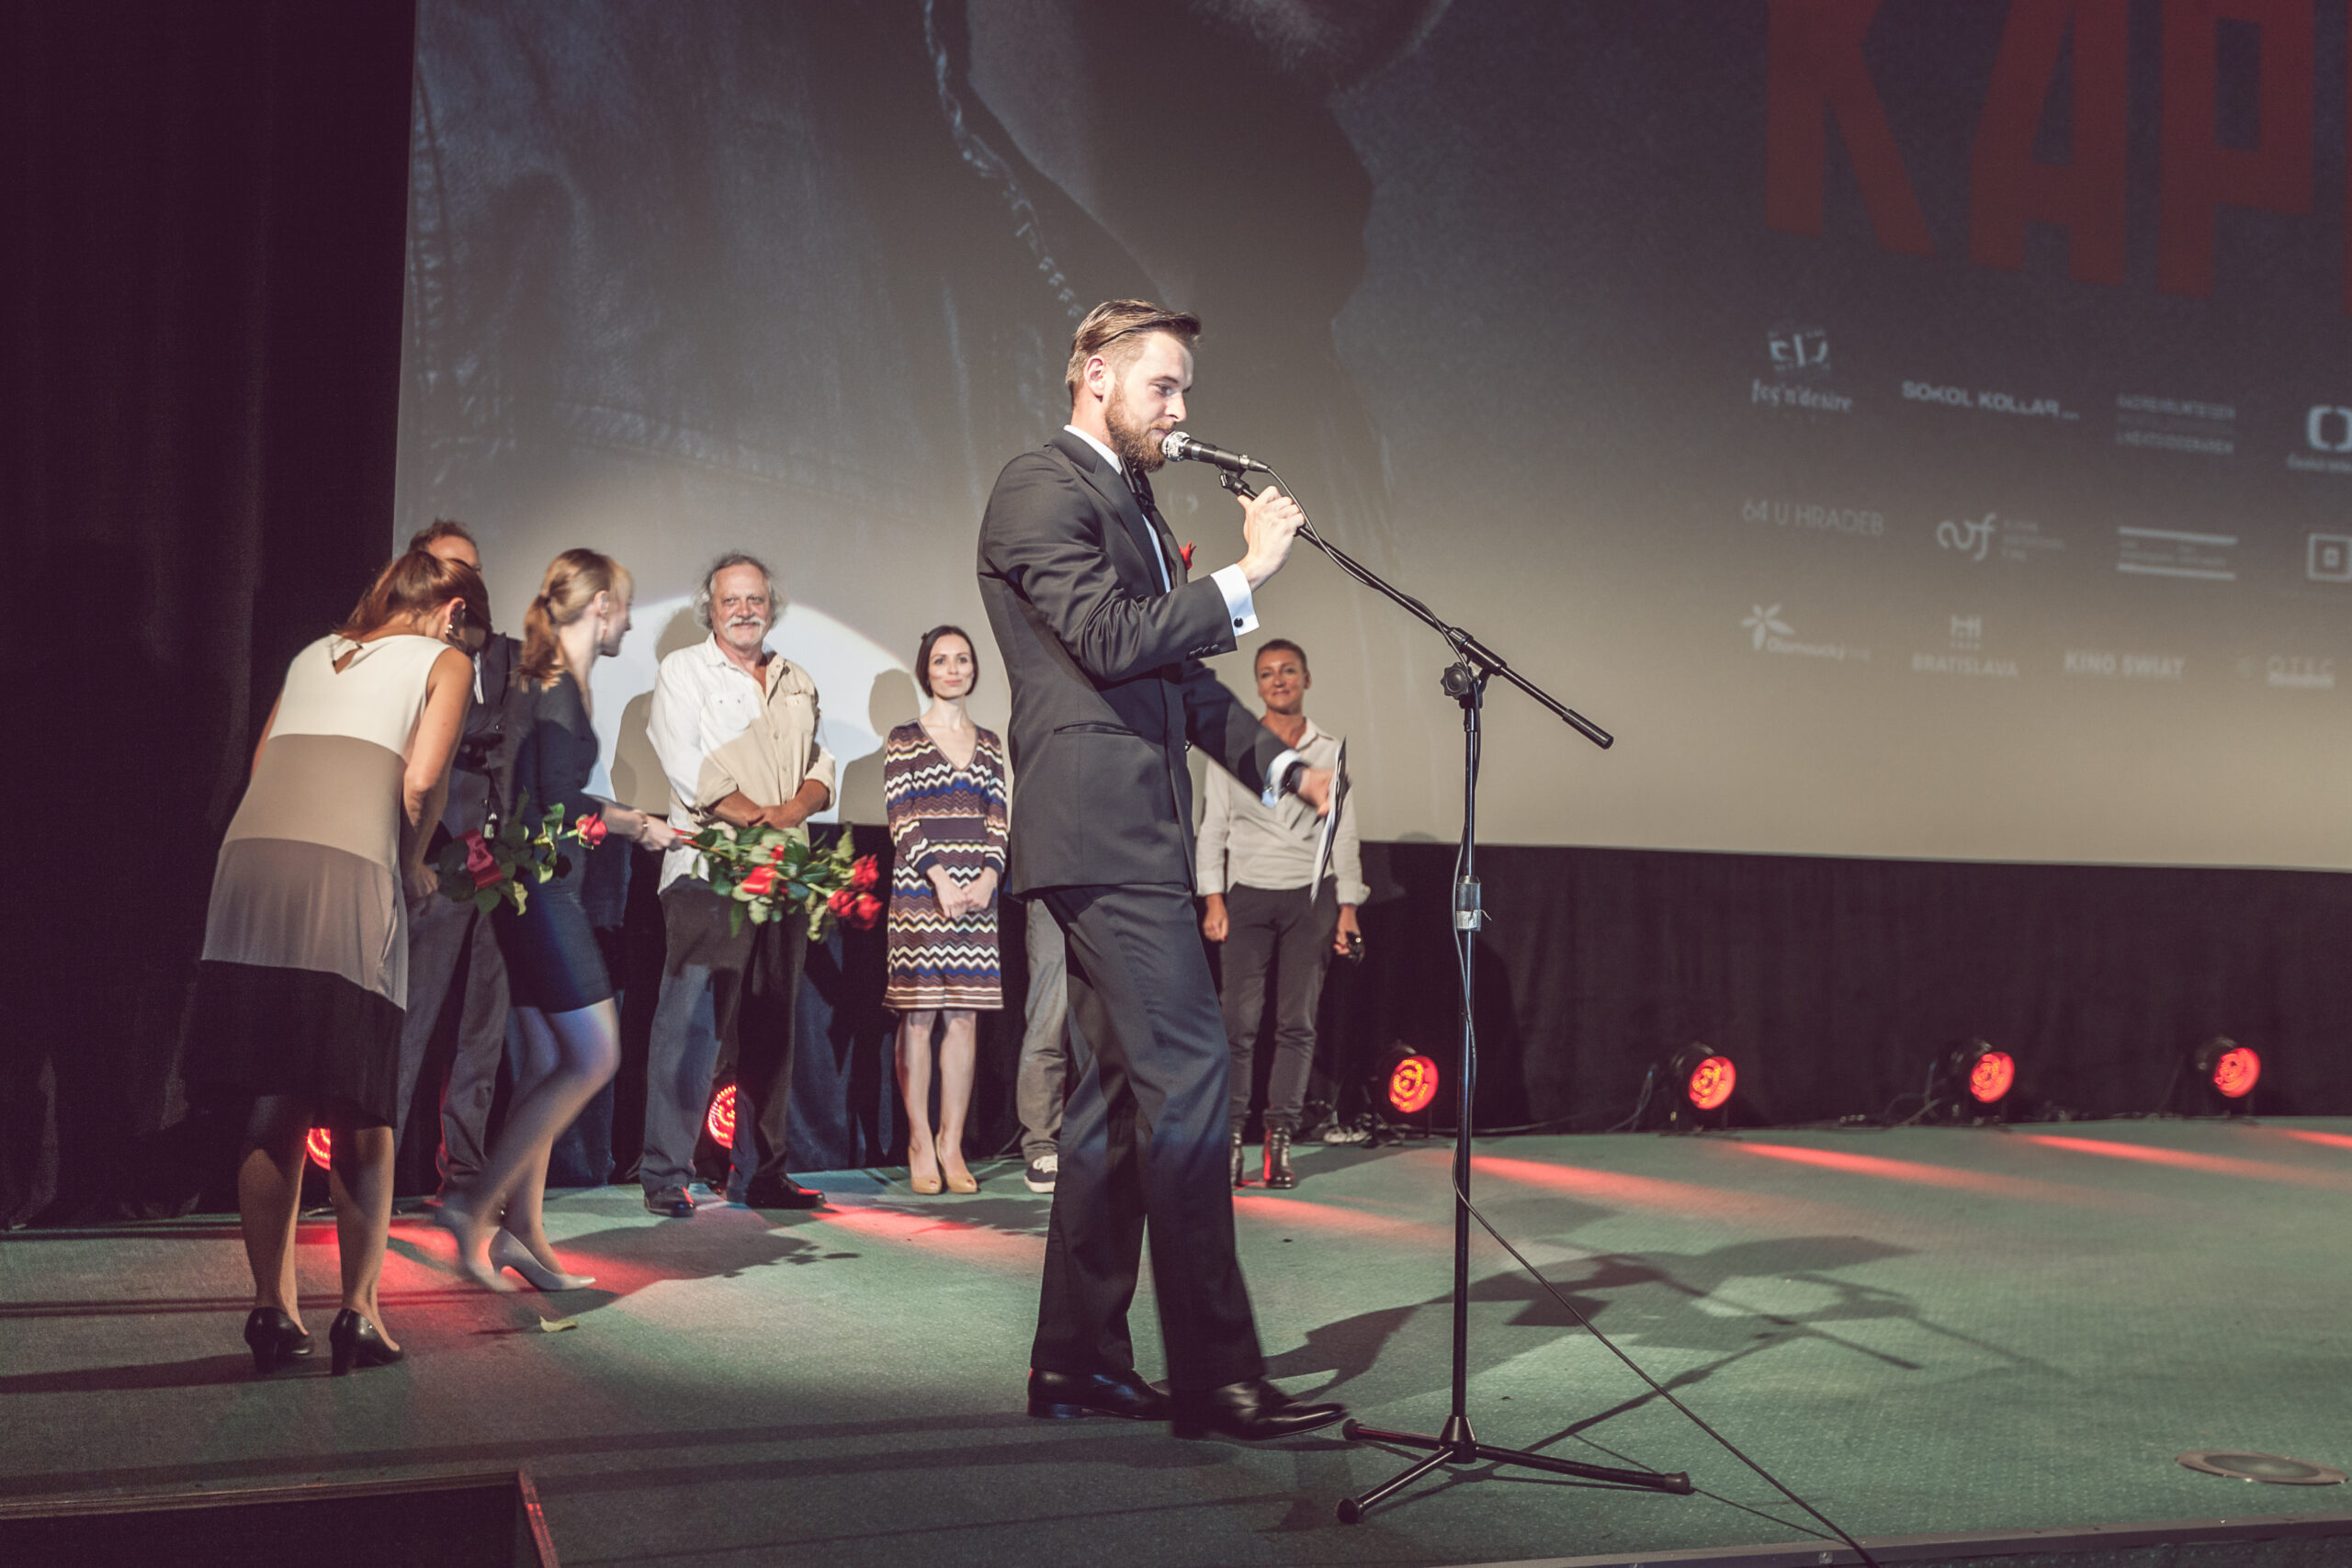 Premiera filmu "Czerwony kapitan". Kino Kijów, Kraków, 2015.